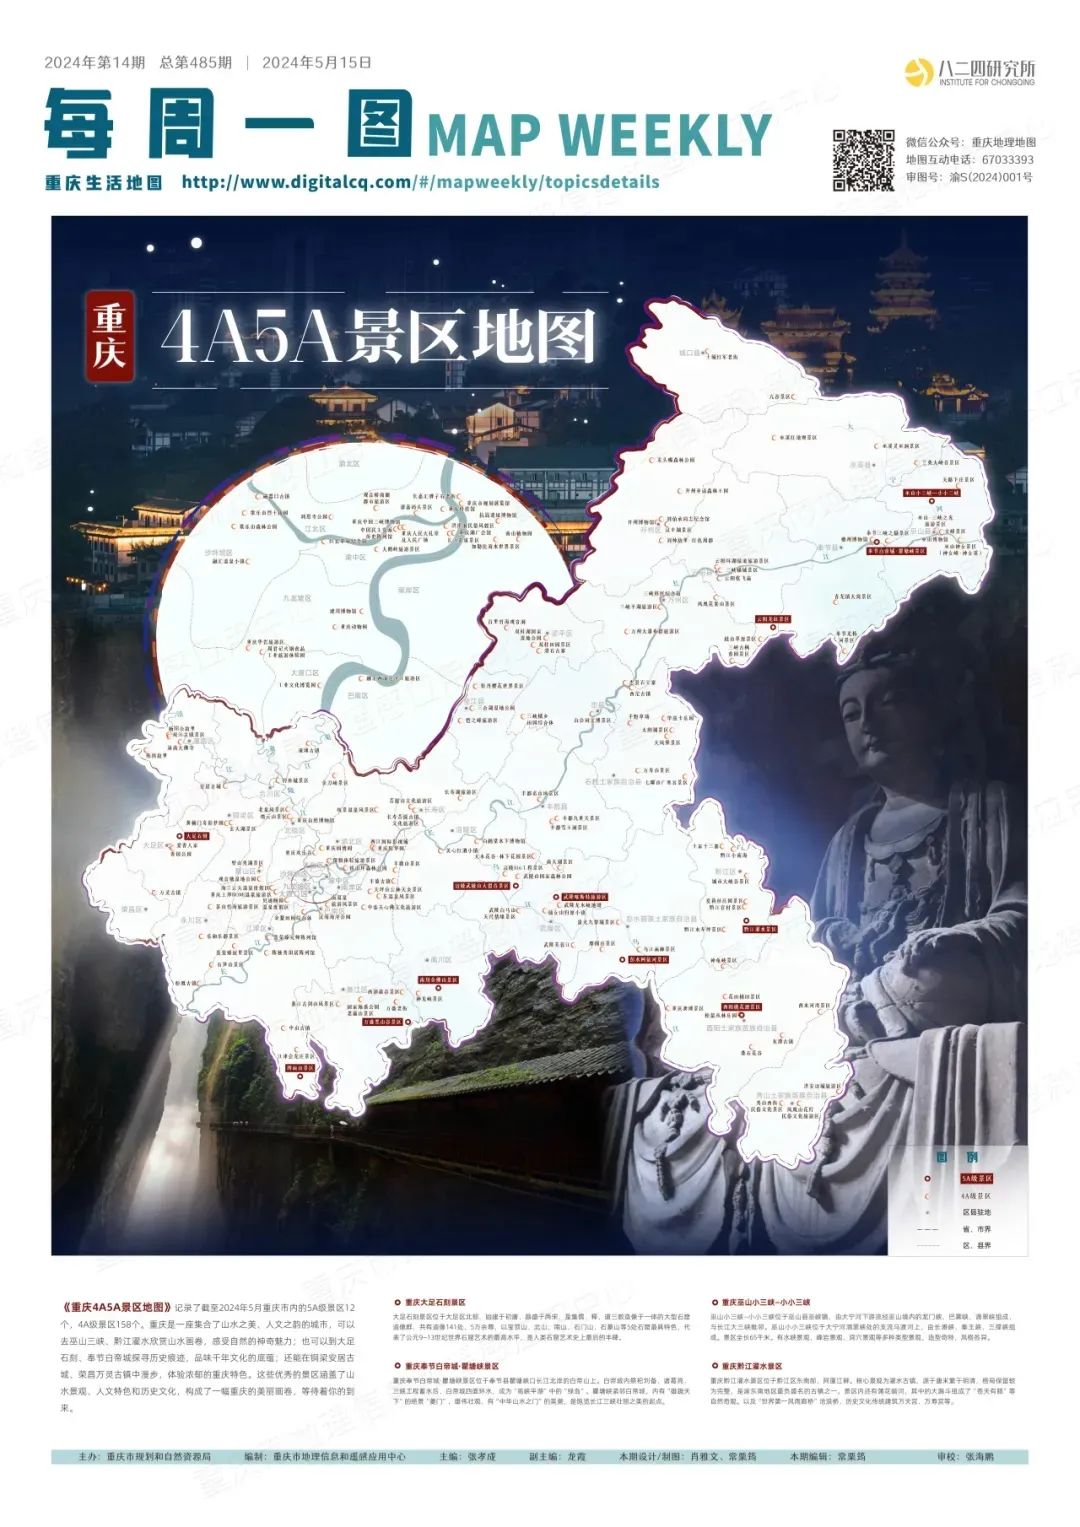 重庆各大景点距离地图图片